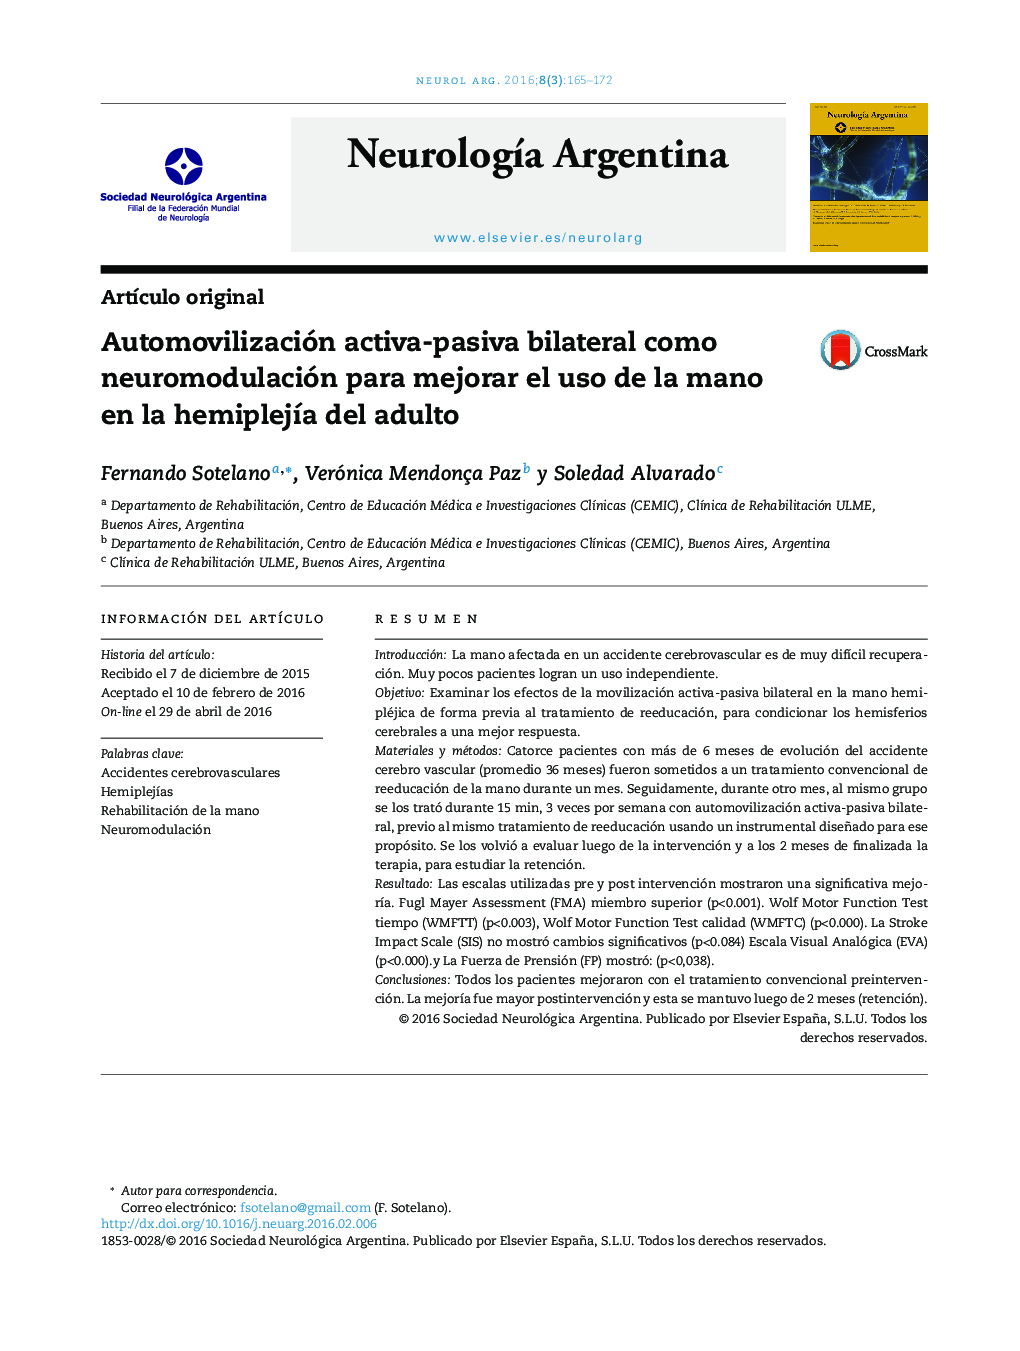 Automovilización activa-pasiva bilateral como neuromodulación para mejorar el uso de la mano en la hemiplejía del adulto